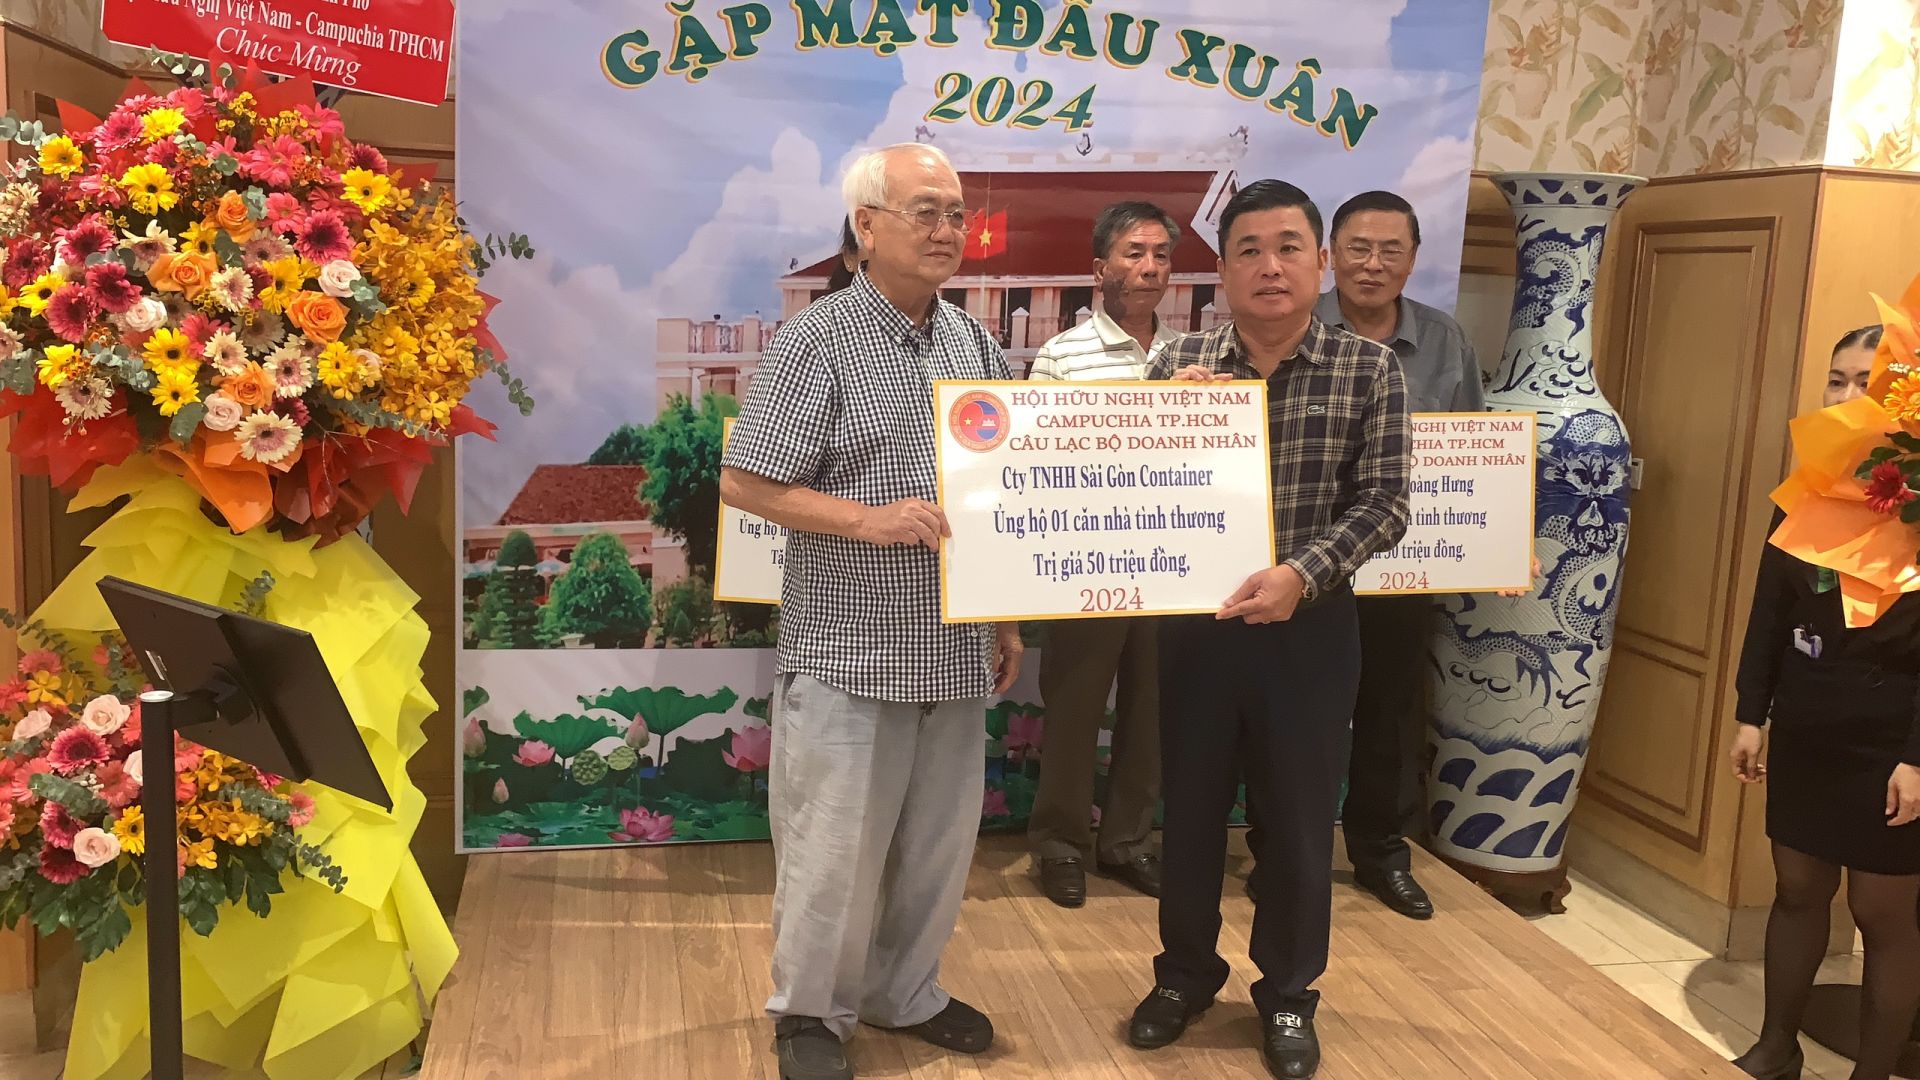 Đại diện công ty TNHH Sài Gòn Container (bìa trái) ủng hộ 1 căn nhà tình thương trị giá 50 triệu đồng